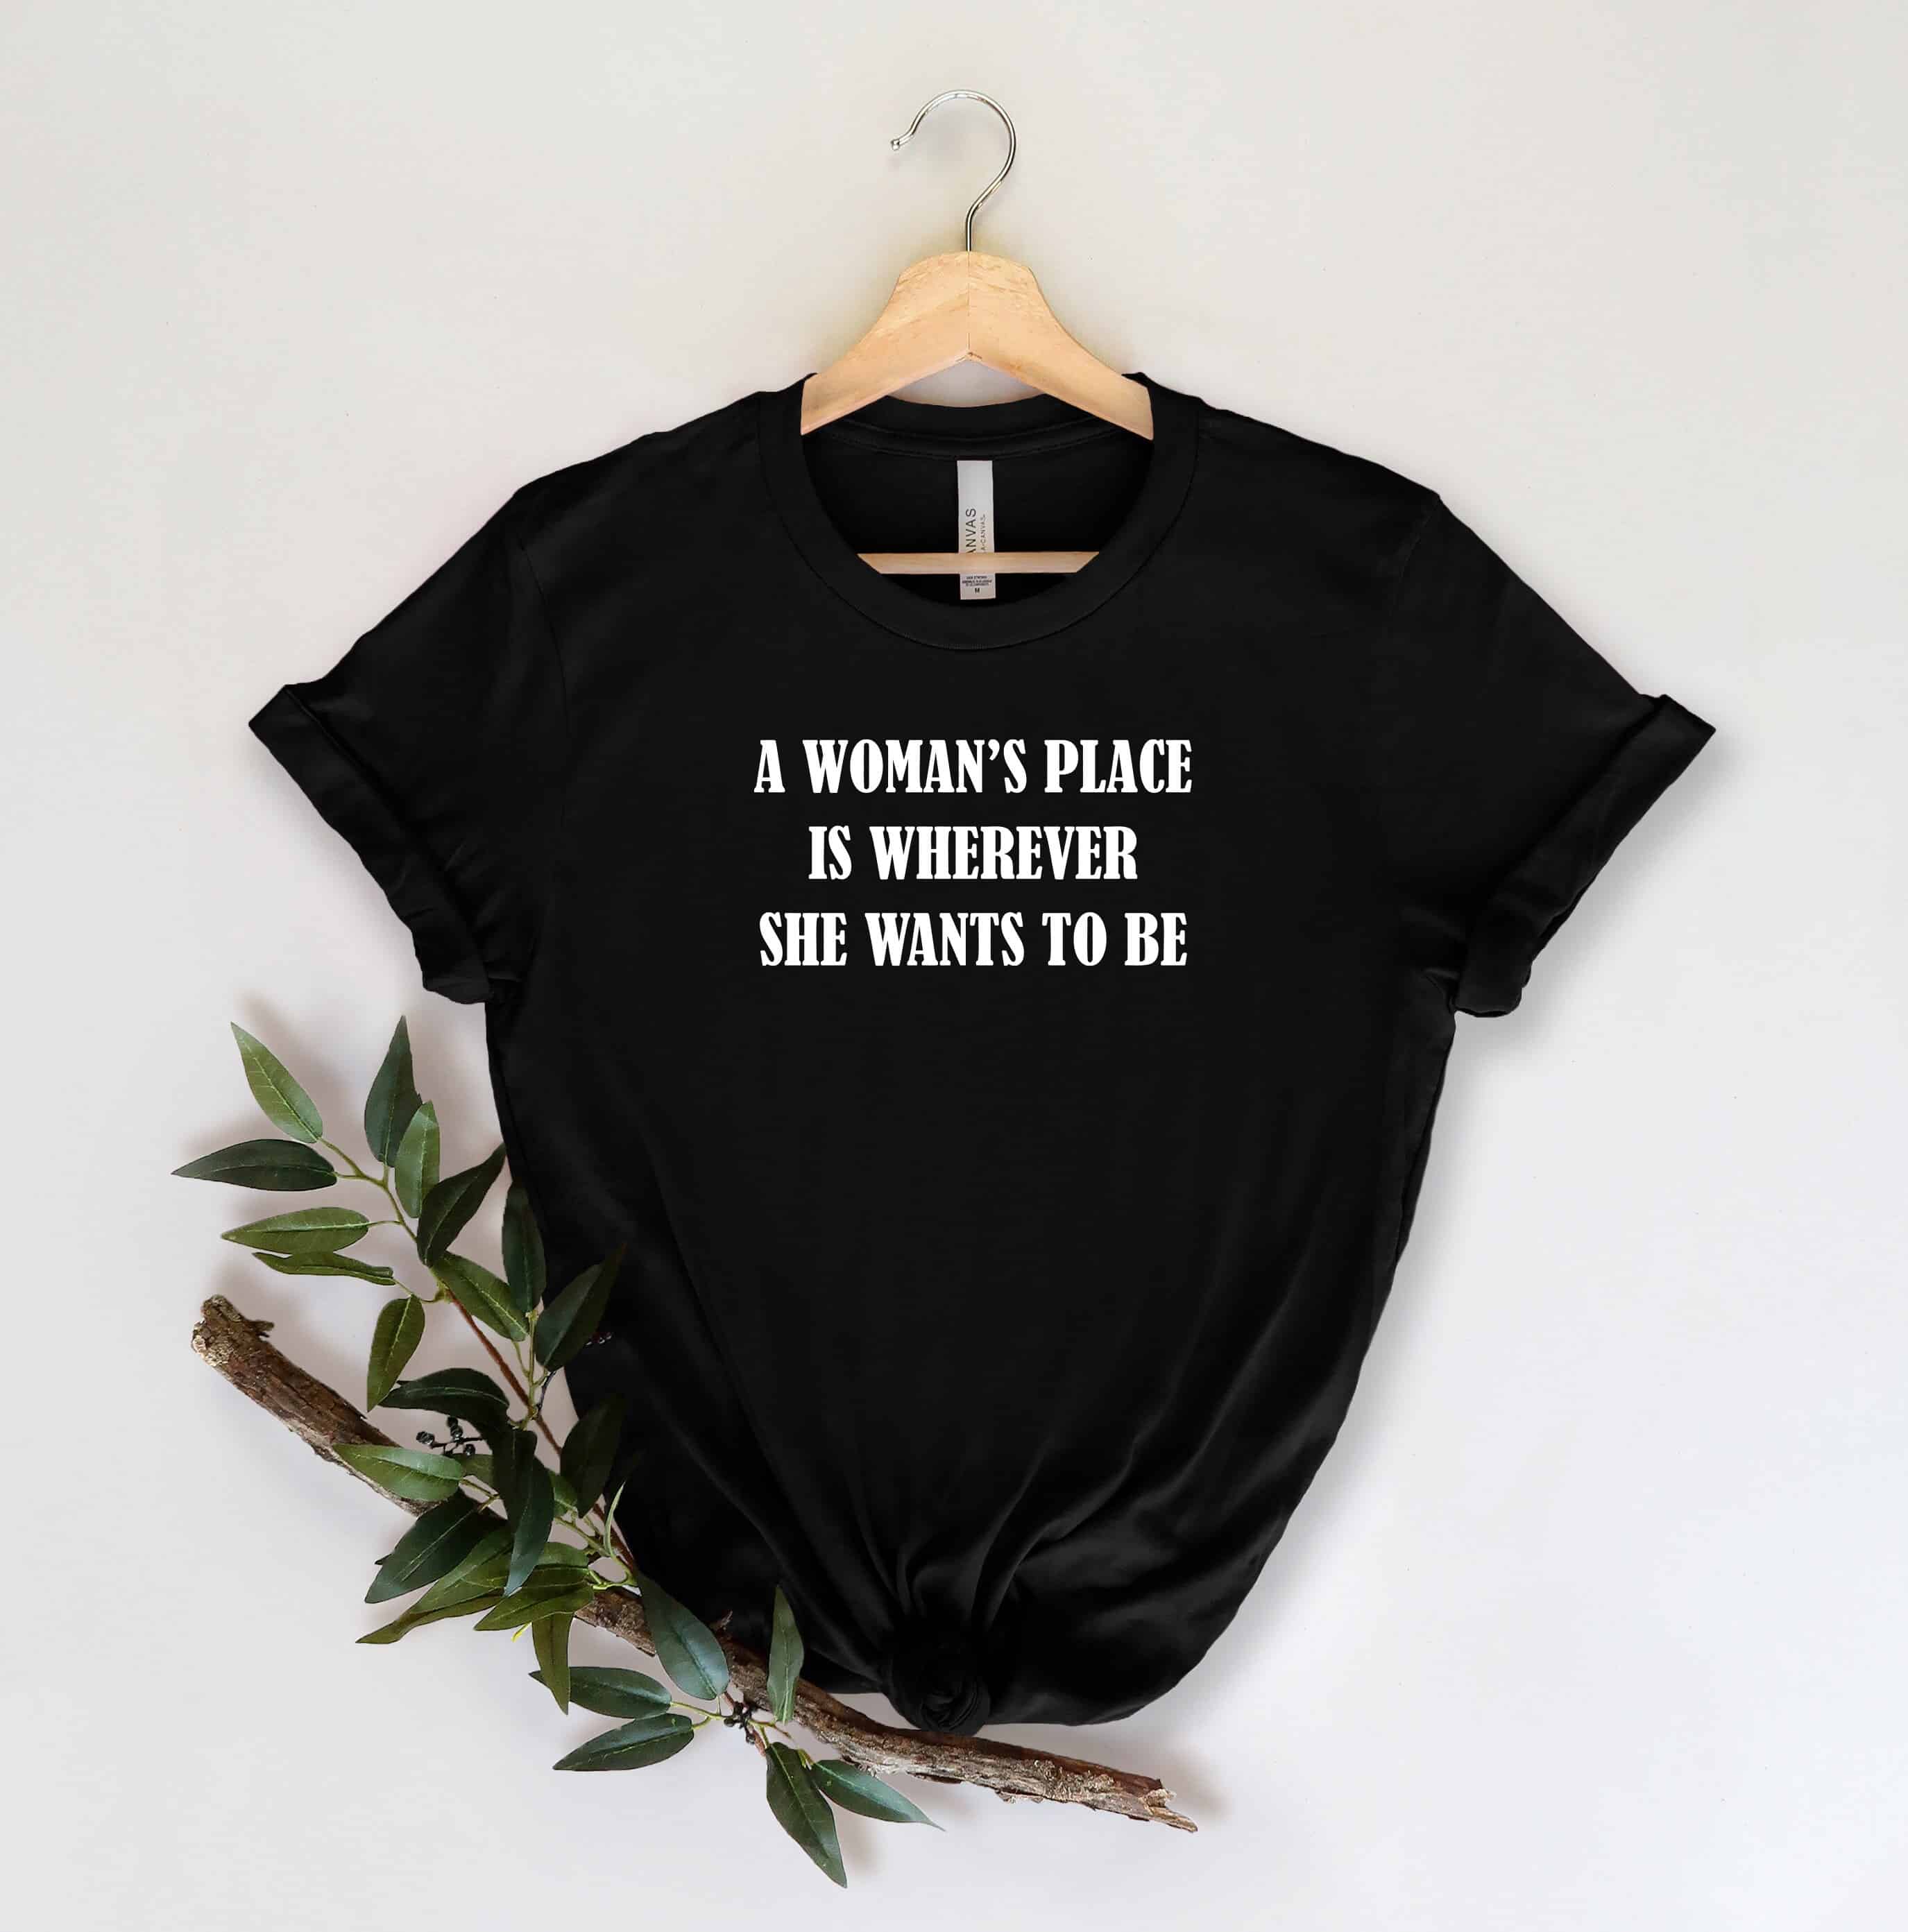 Shirts Feminism Inspirational Shirt Feminist Shirt Woman Up Tee Woman Up Shirt Empowered Women Shirt Motivational Shirt Feminist Tee